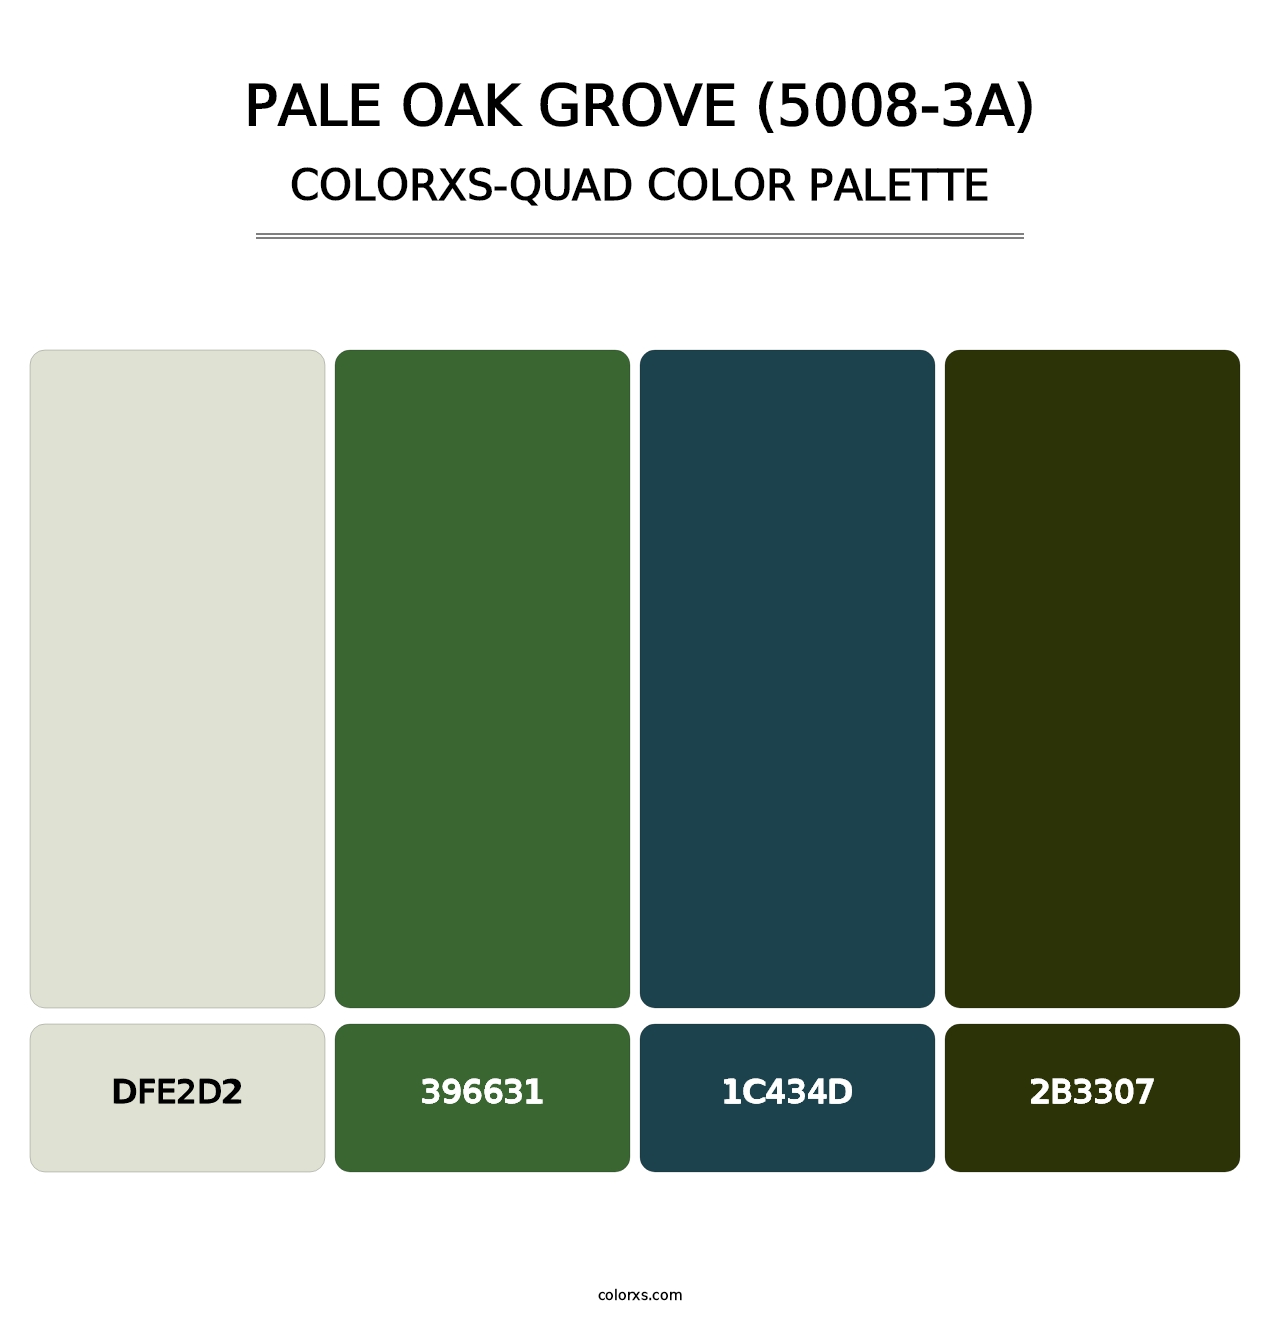 Pale Oak Grove (5008-3A) - Colorxs Quad Palette